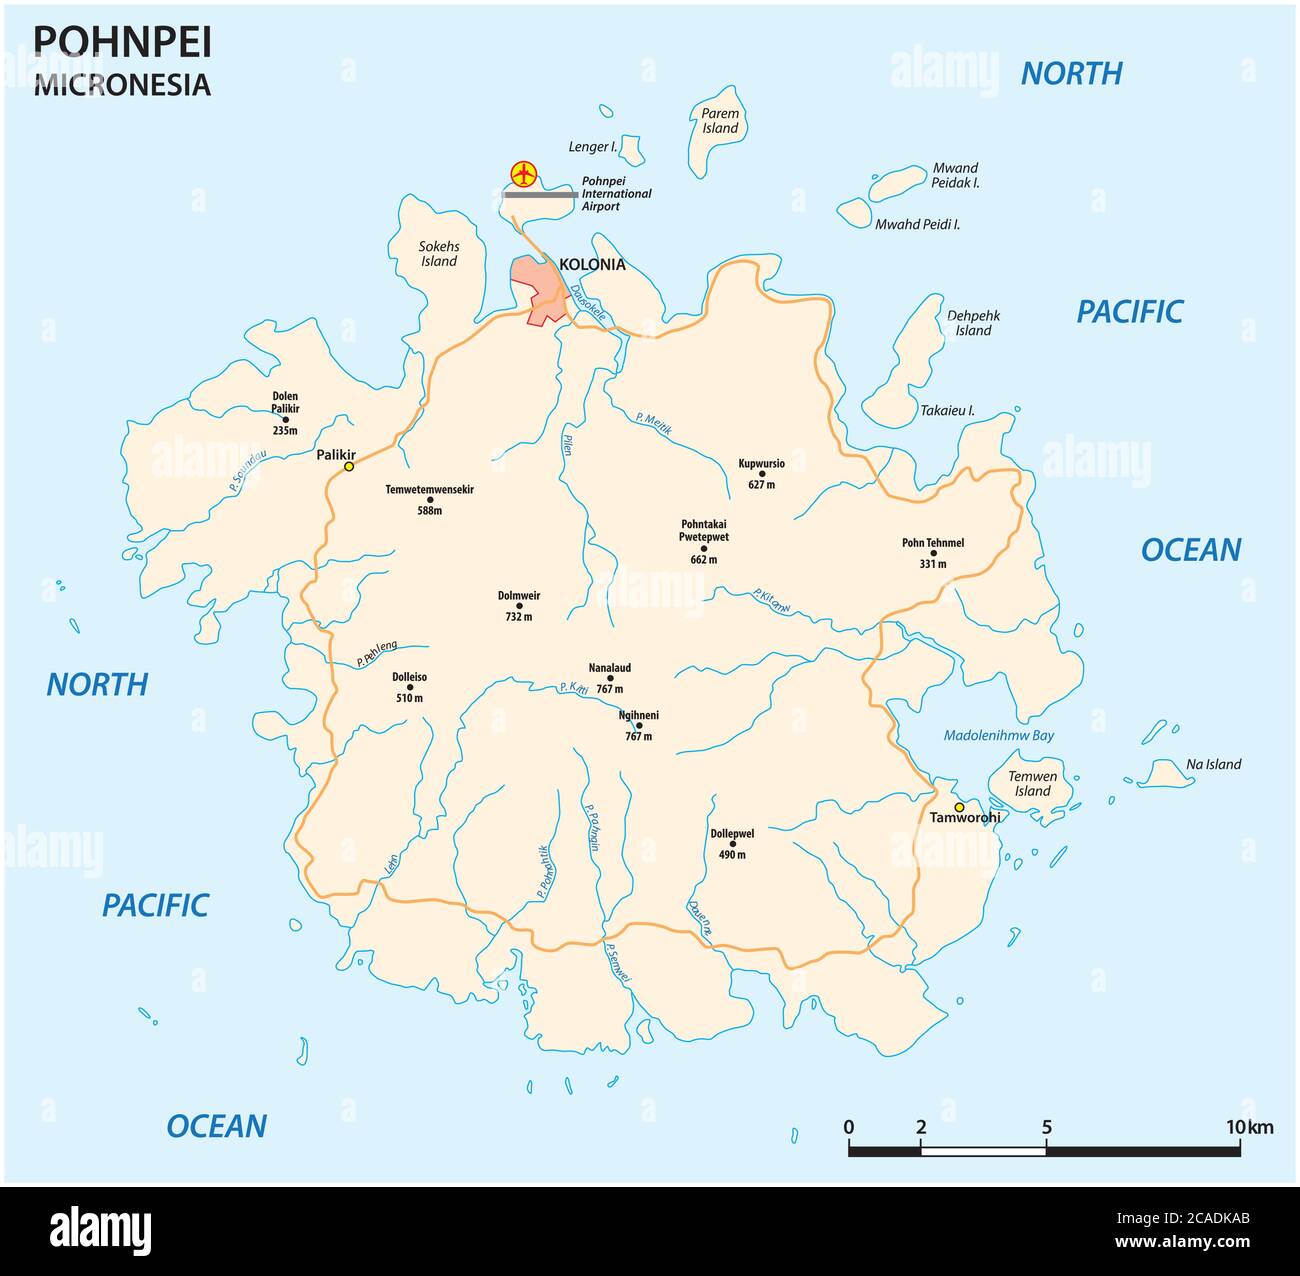 Carte routière vectorielle de la principale île micronésienne de Pohnpei Illustration de Vecteur